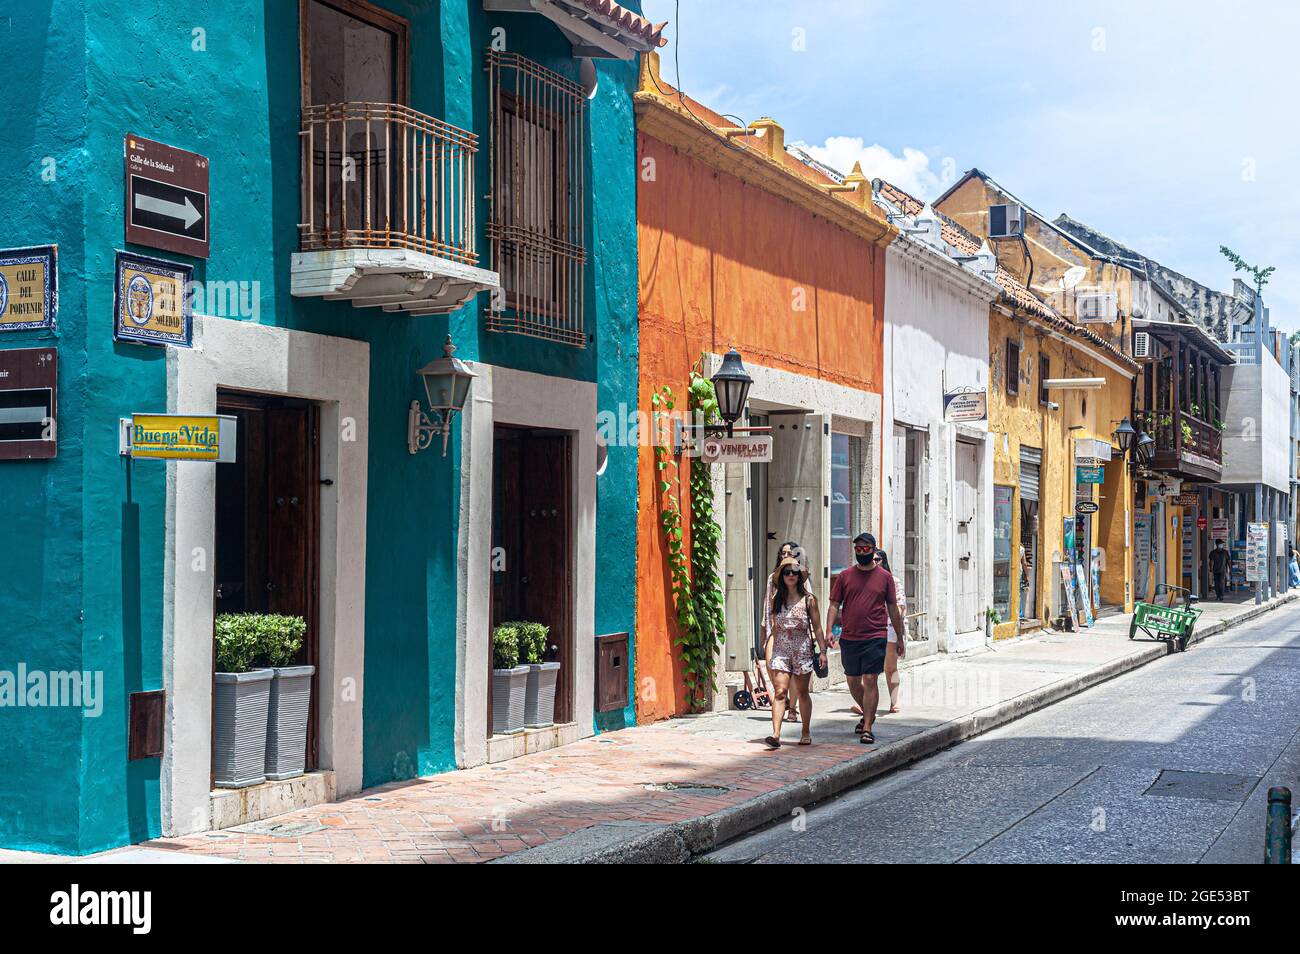 Calle de la Soledad, Cartagena de Indias, Colombia. Stock Photo